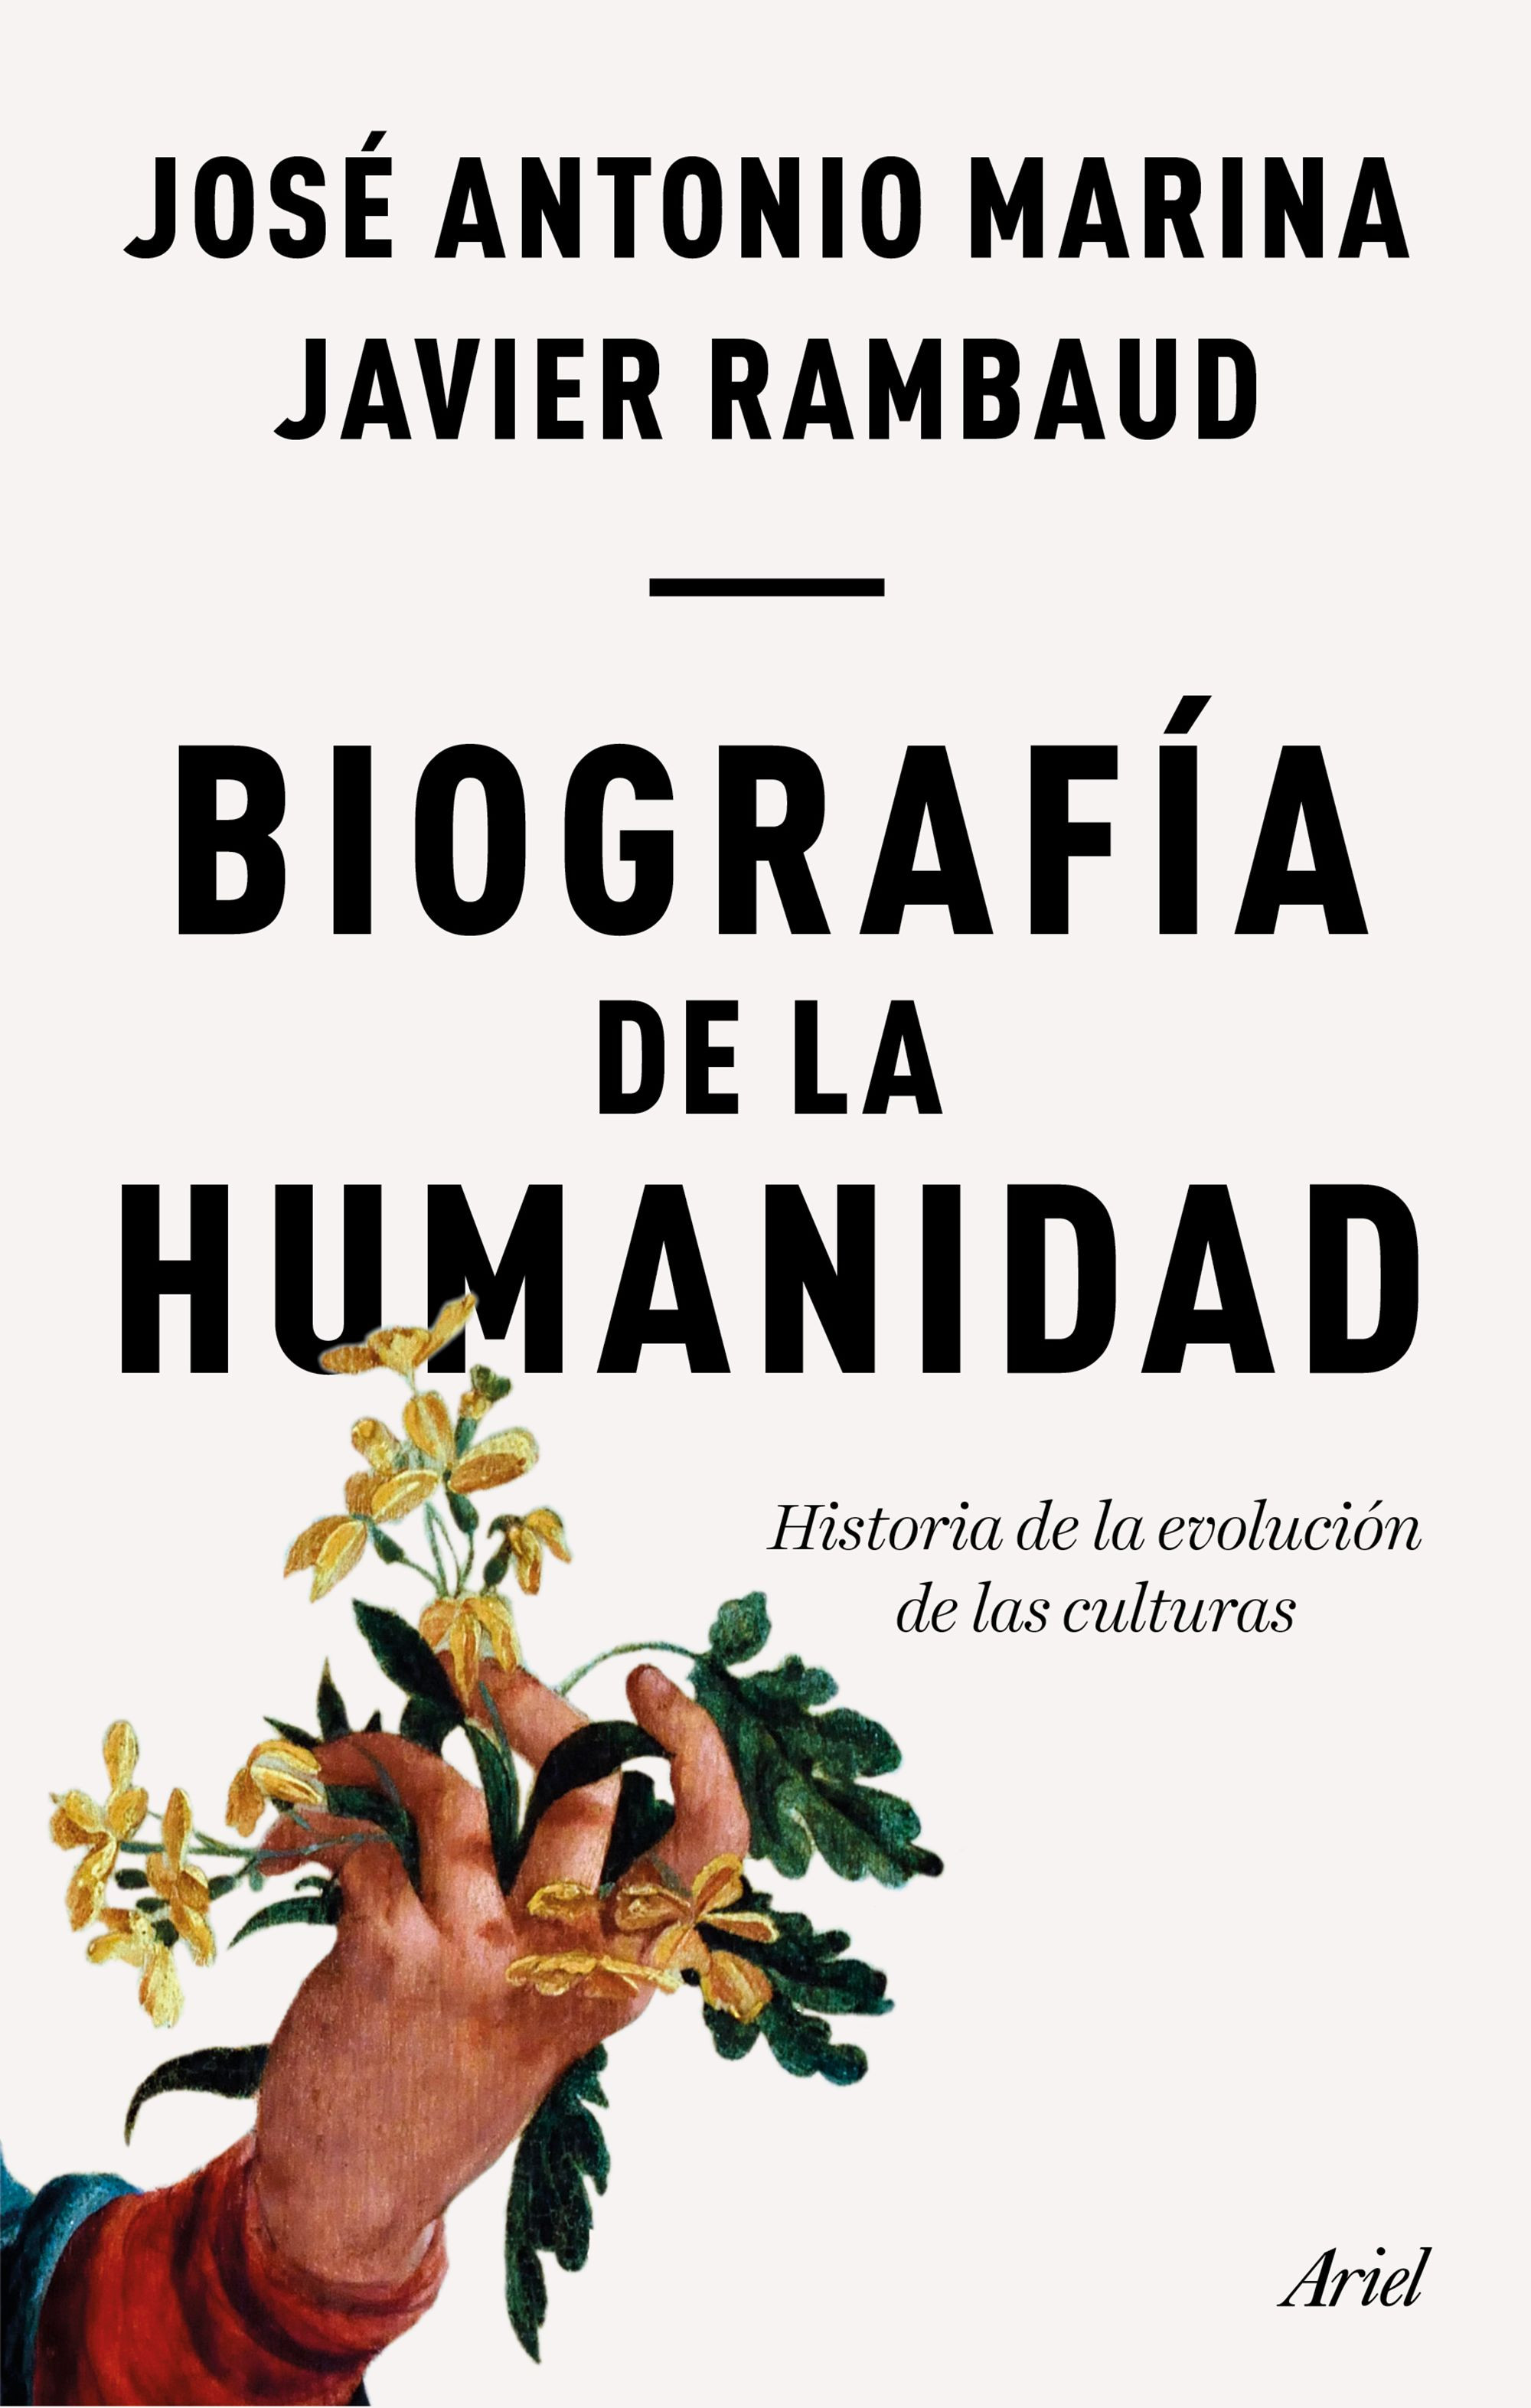 Imagen Biografía de la humanidad. José Antonio Marina - Javier Rambaud